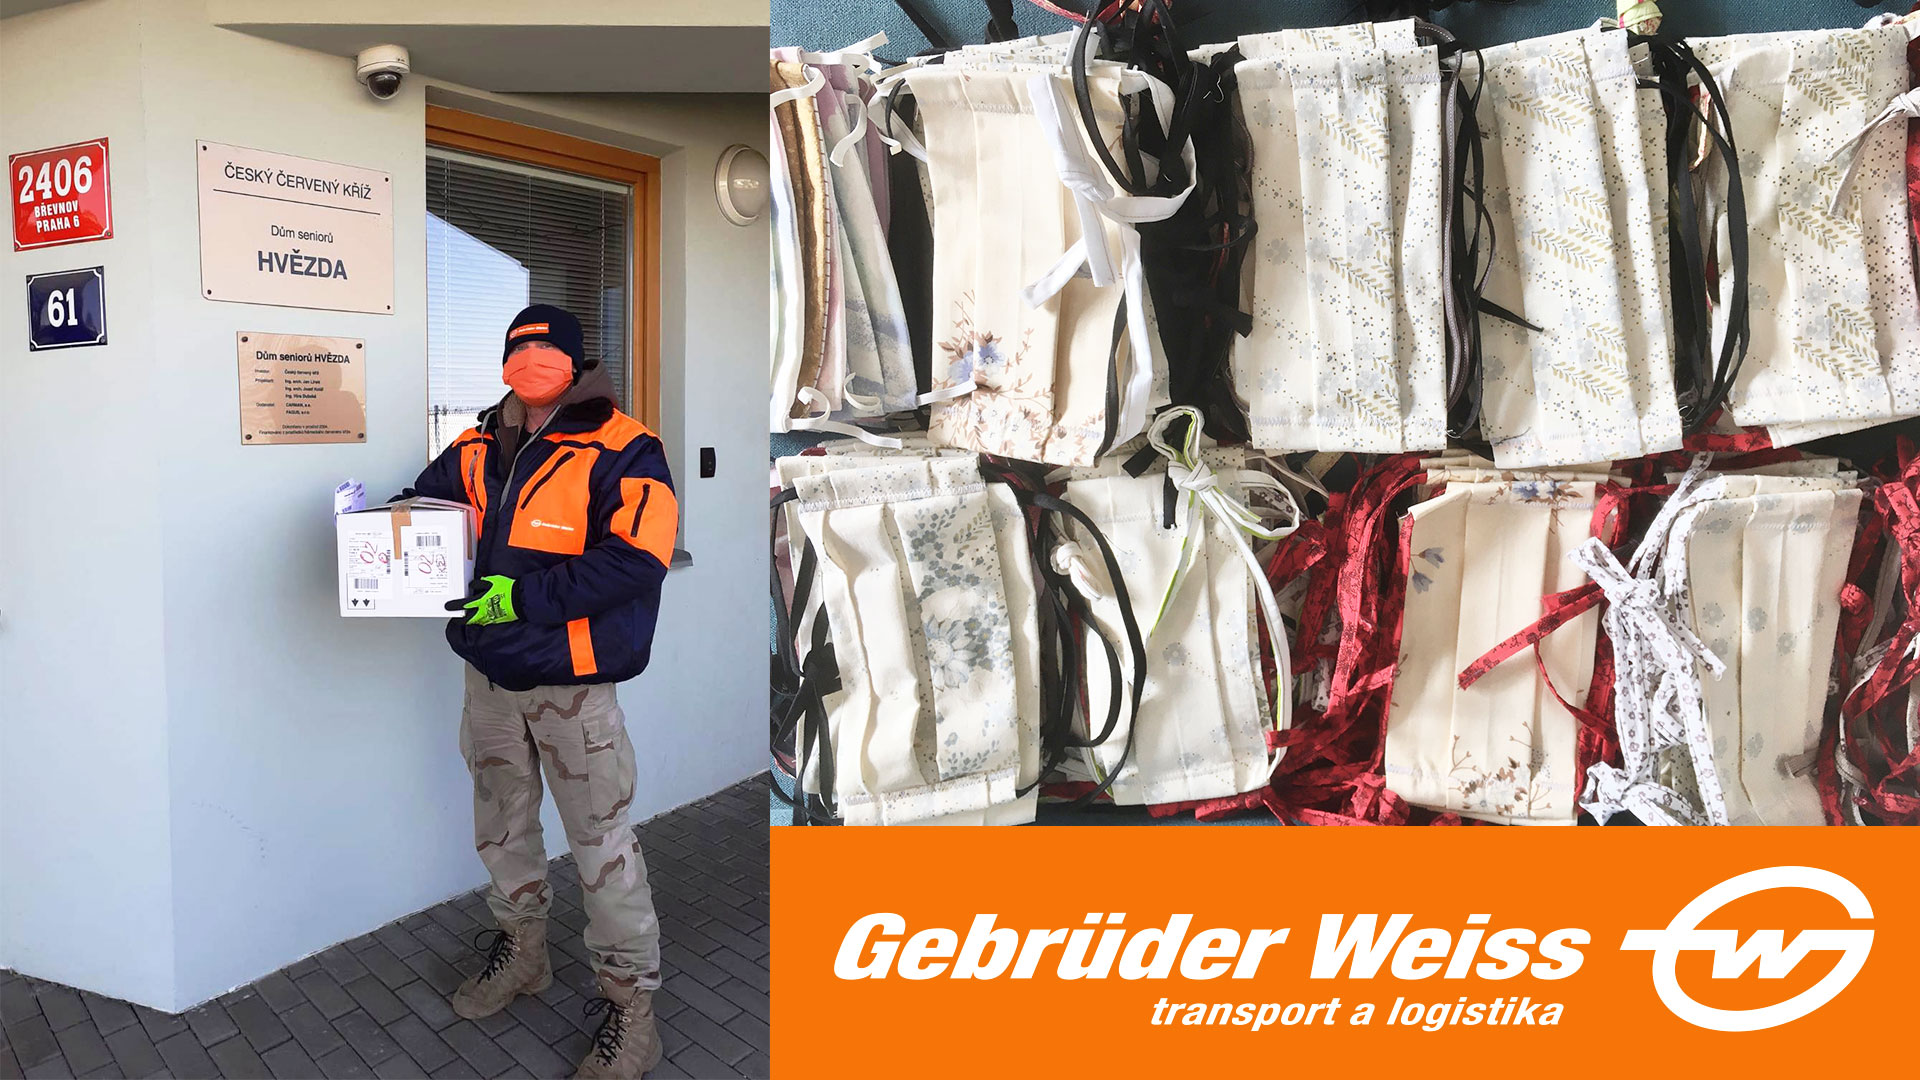 Gebrüder Weiss rozváží ochranné pomůcky nemocnicím, seniorům i lidem bez domova